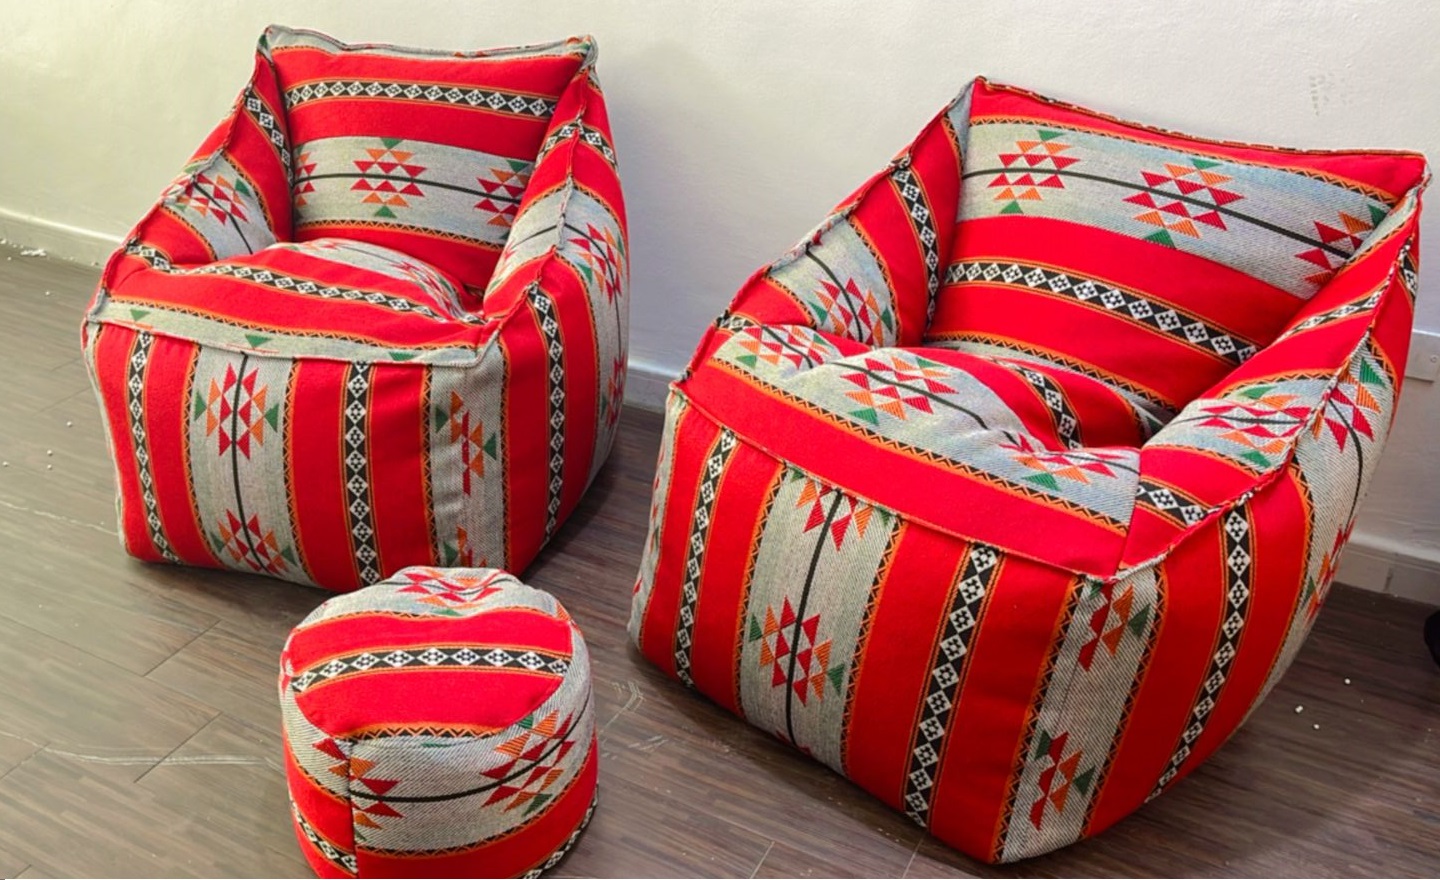 Oriental bean bag chair with a circular box